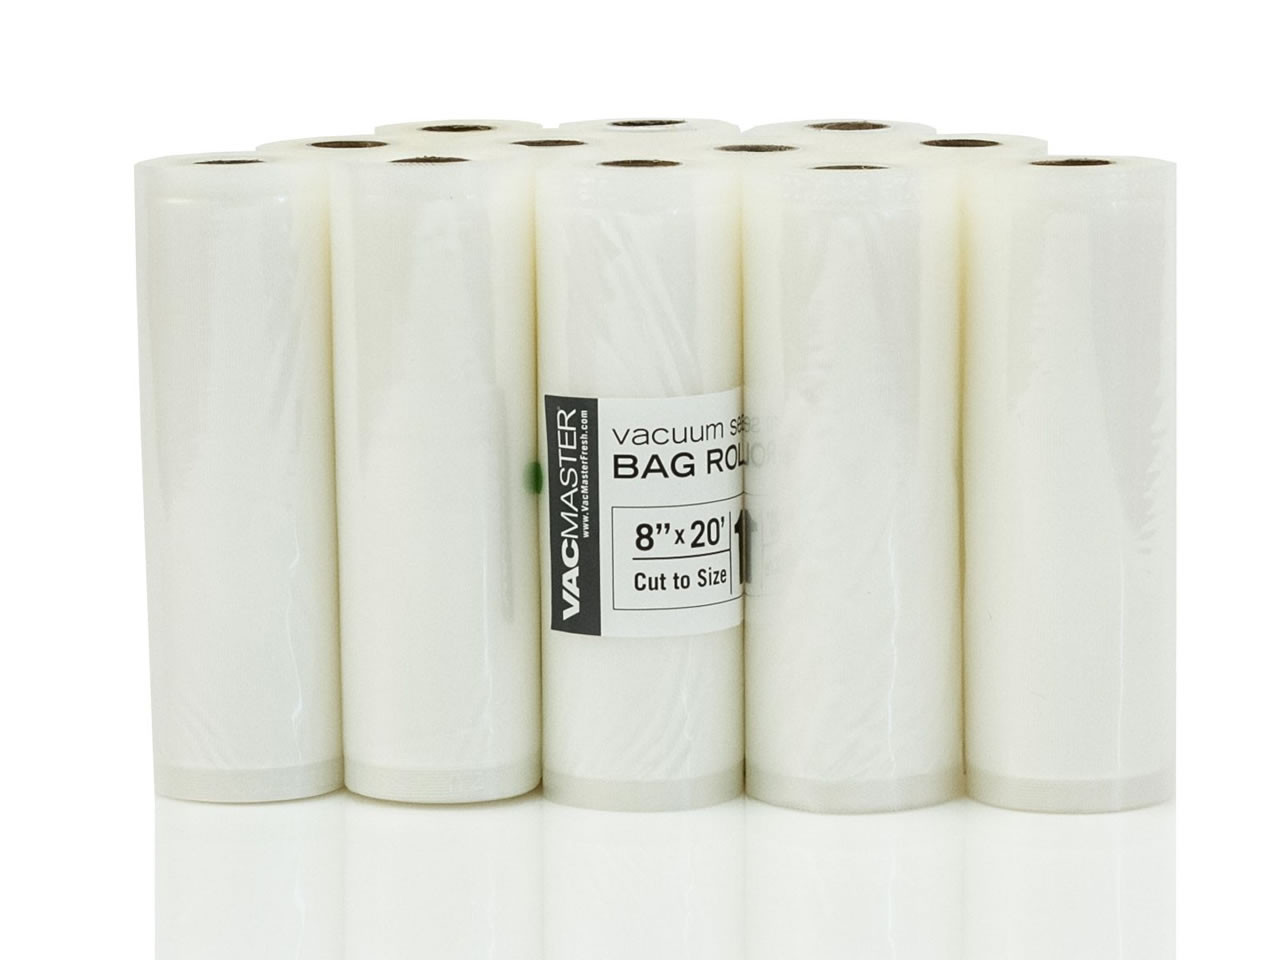 Vacuum Sealer Bags, 50 Pack Quart Size 8 X 12 Vacuum Food Sealer Bags,  Food Se